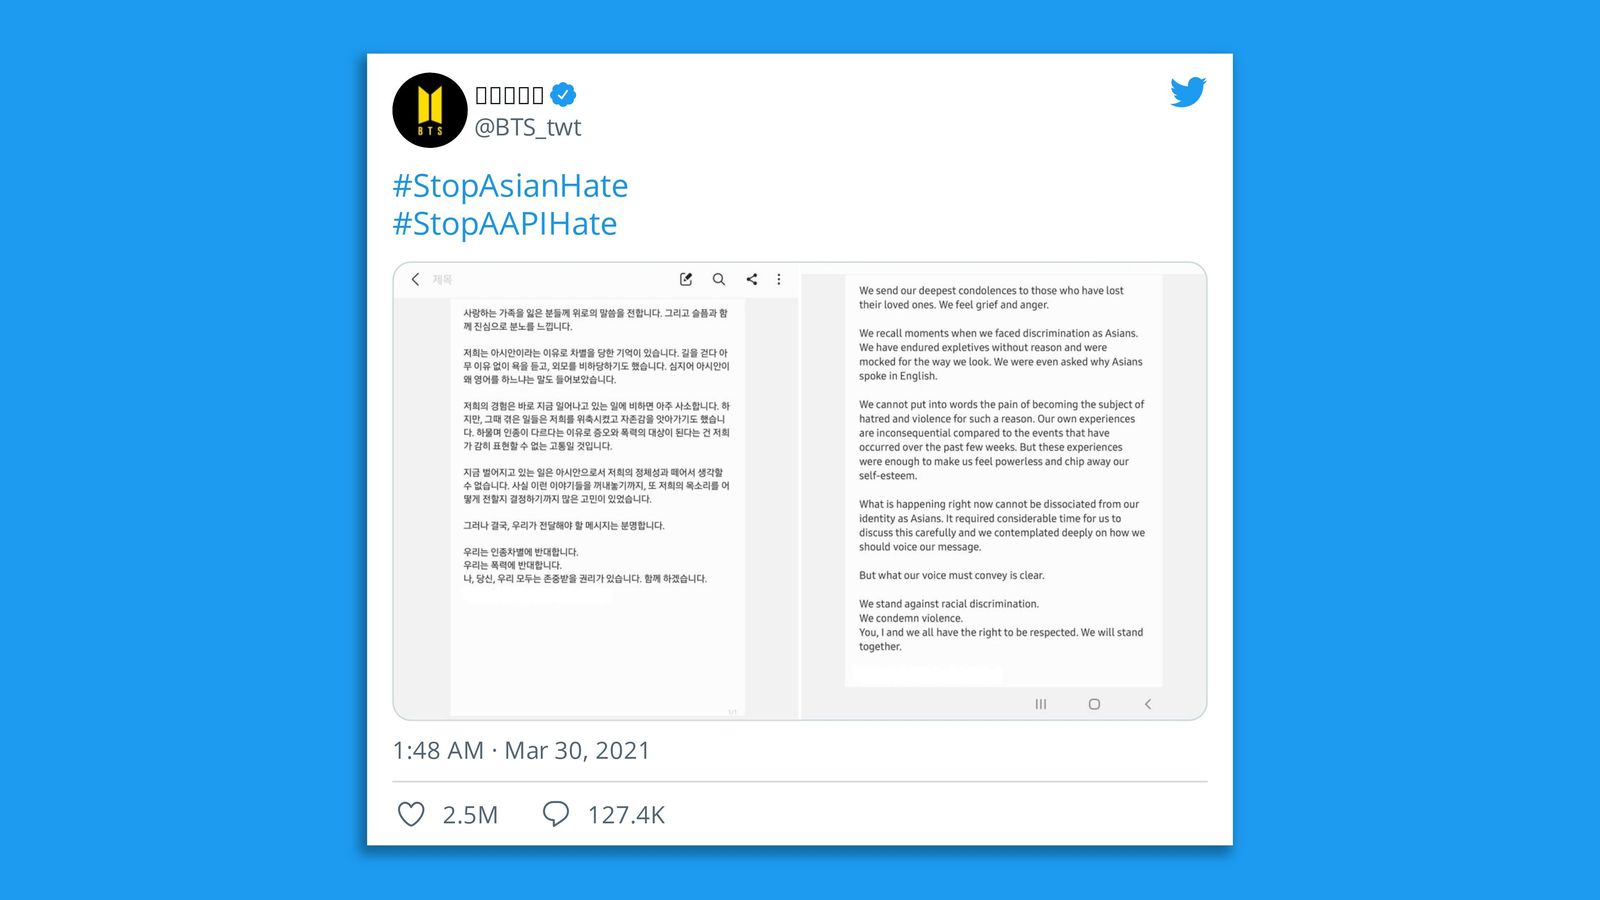 BTS Stop Asian Hate tweet was most retweeted in 2021